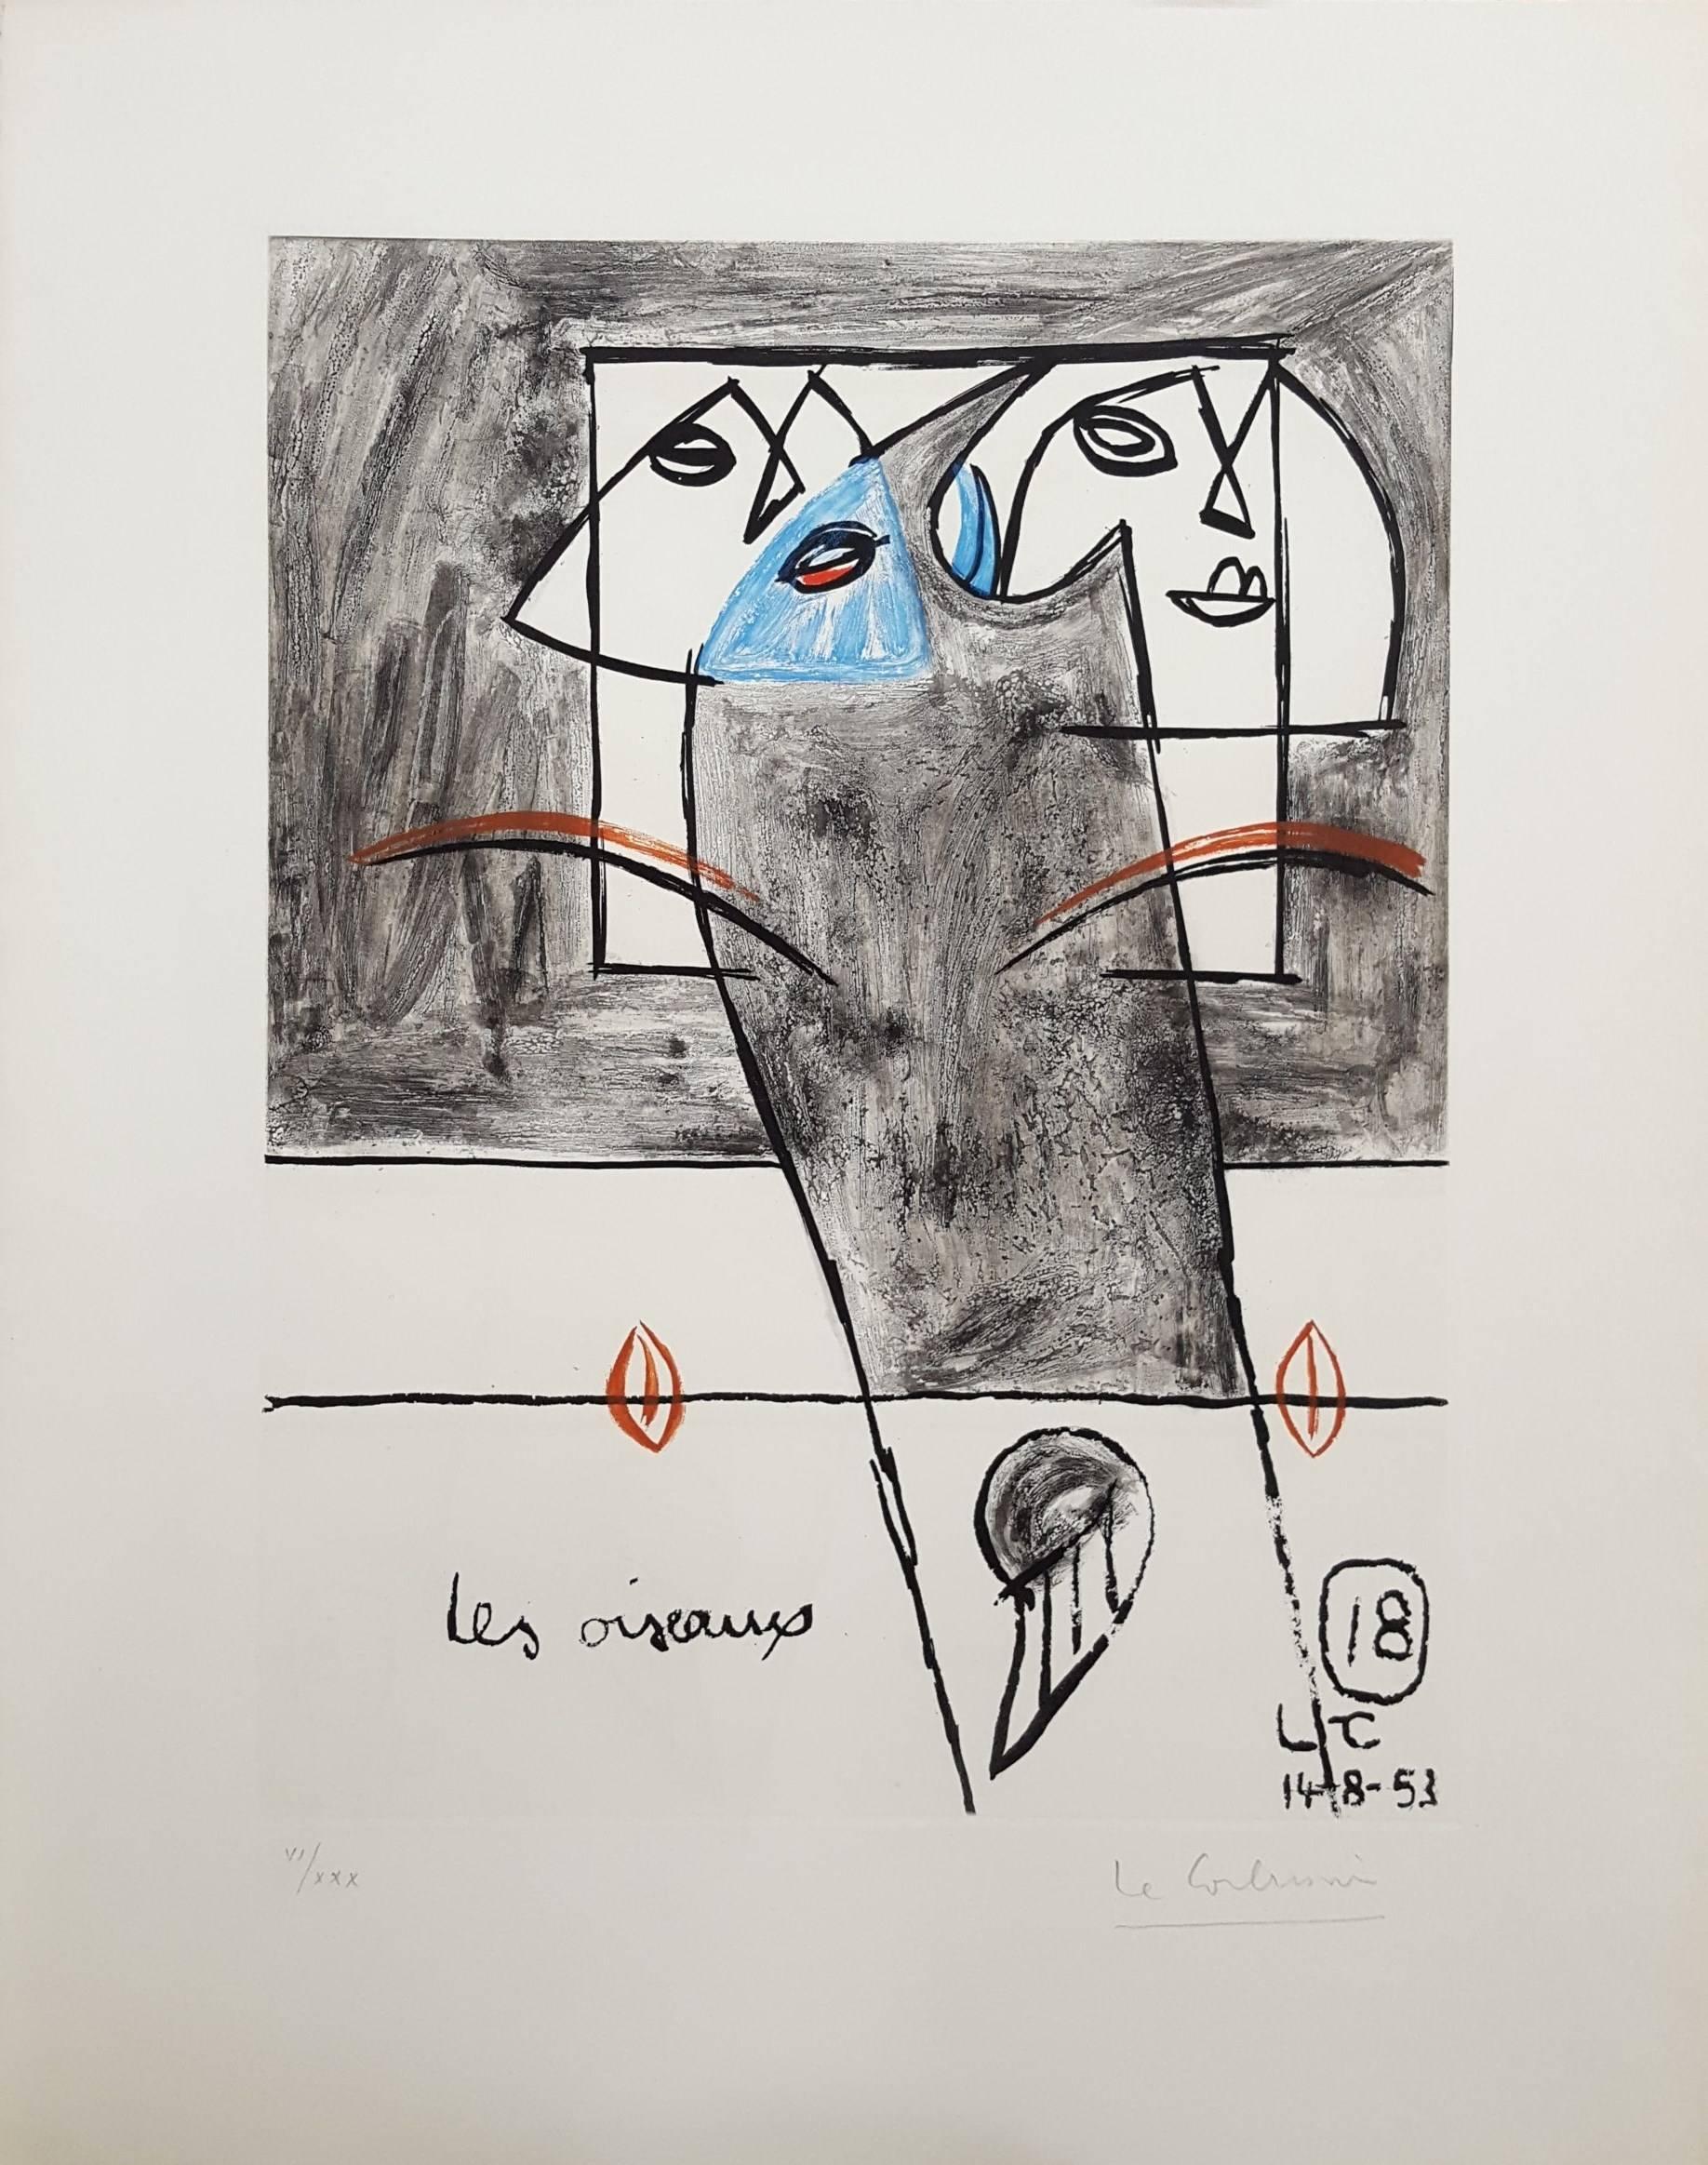 Unité, Planche 18 (Set of 2) - Print by Le Corbusier